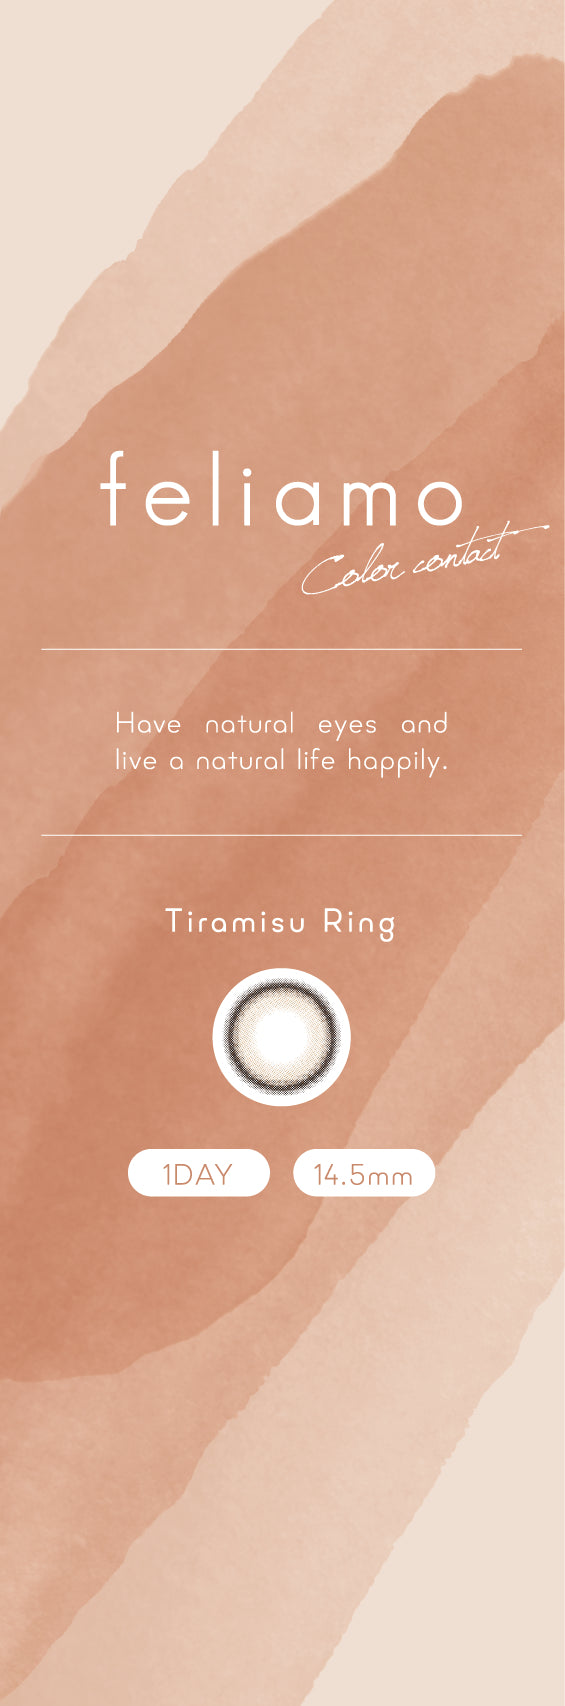 Tiramisu Ring | 1day